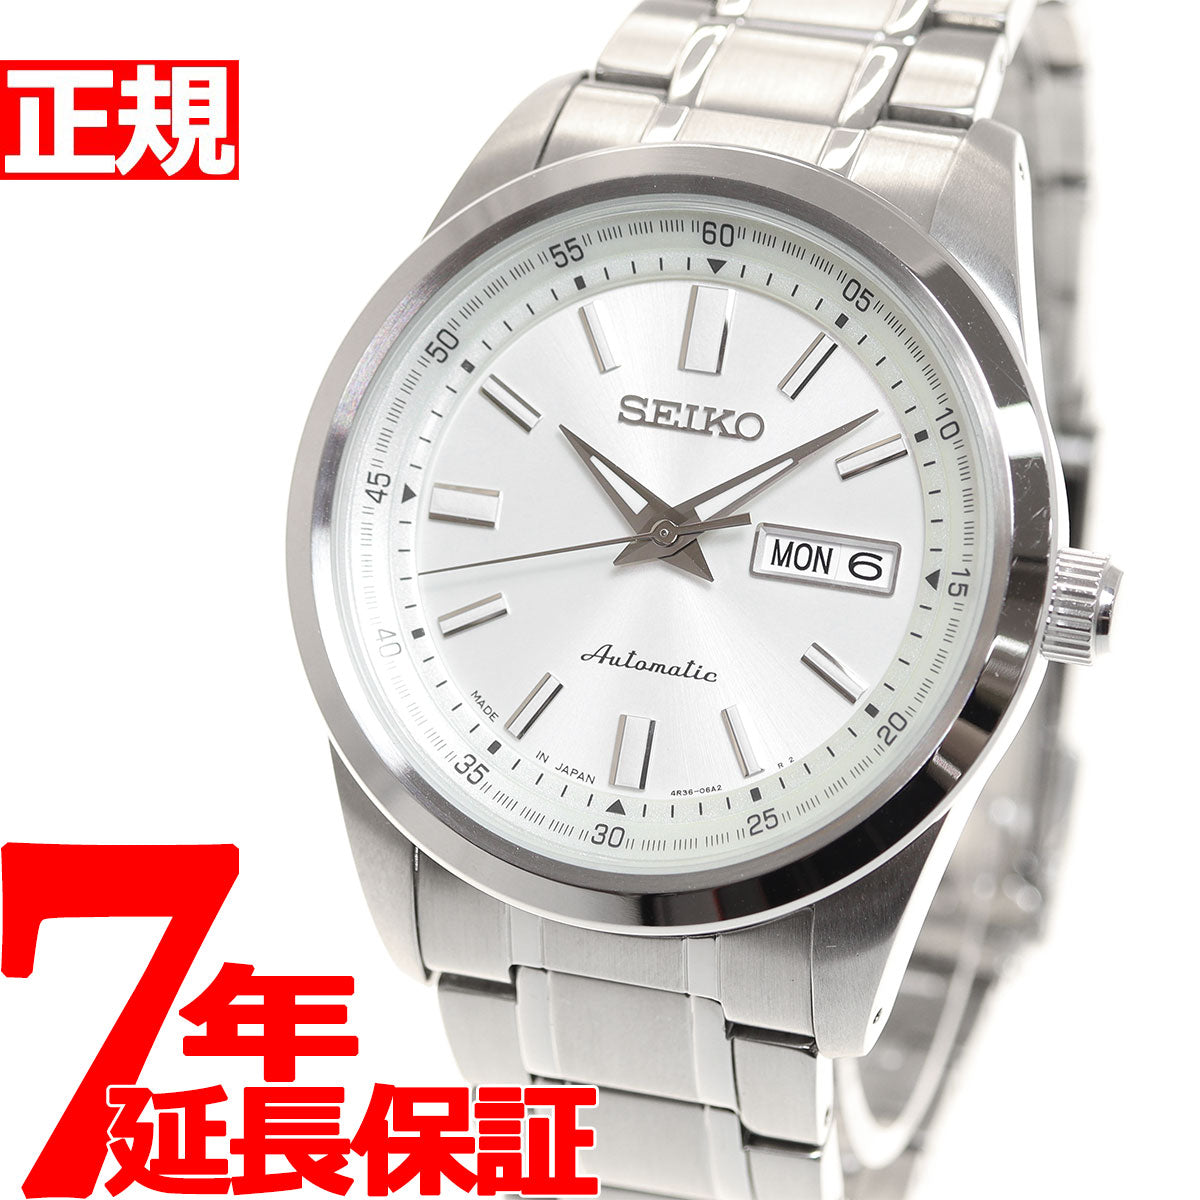 セイコー メカニカル SEIKO Mechanical 自動巻き メカニカル 腕時計 